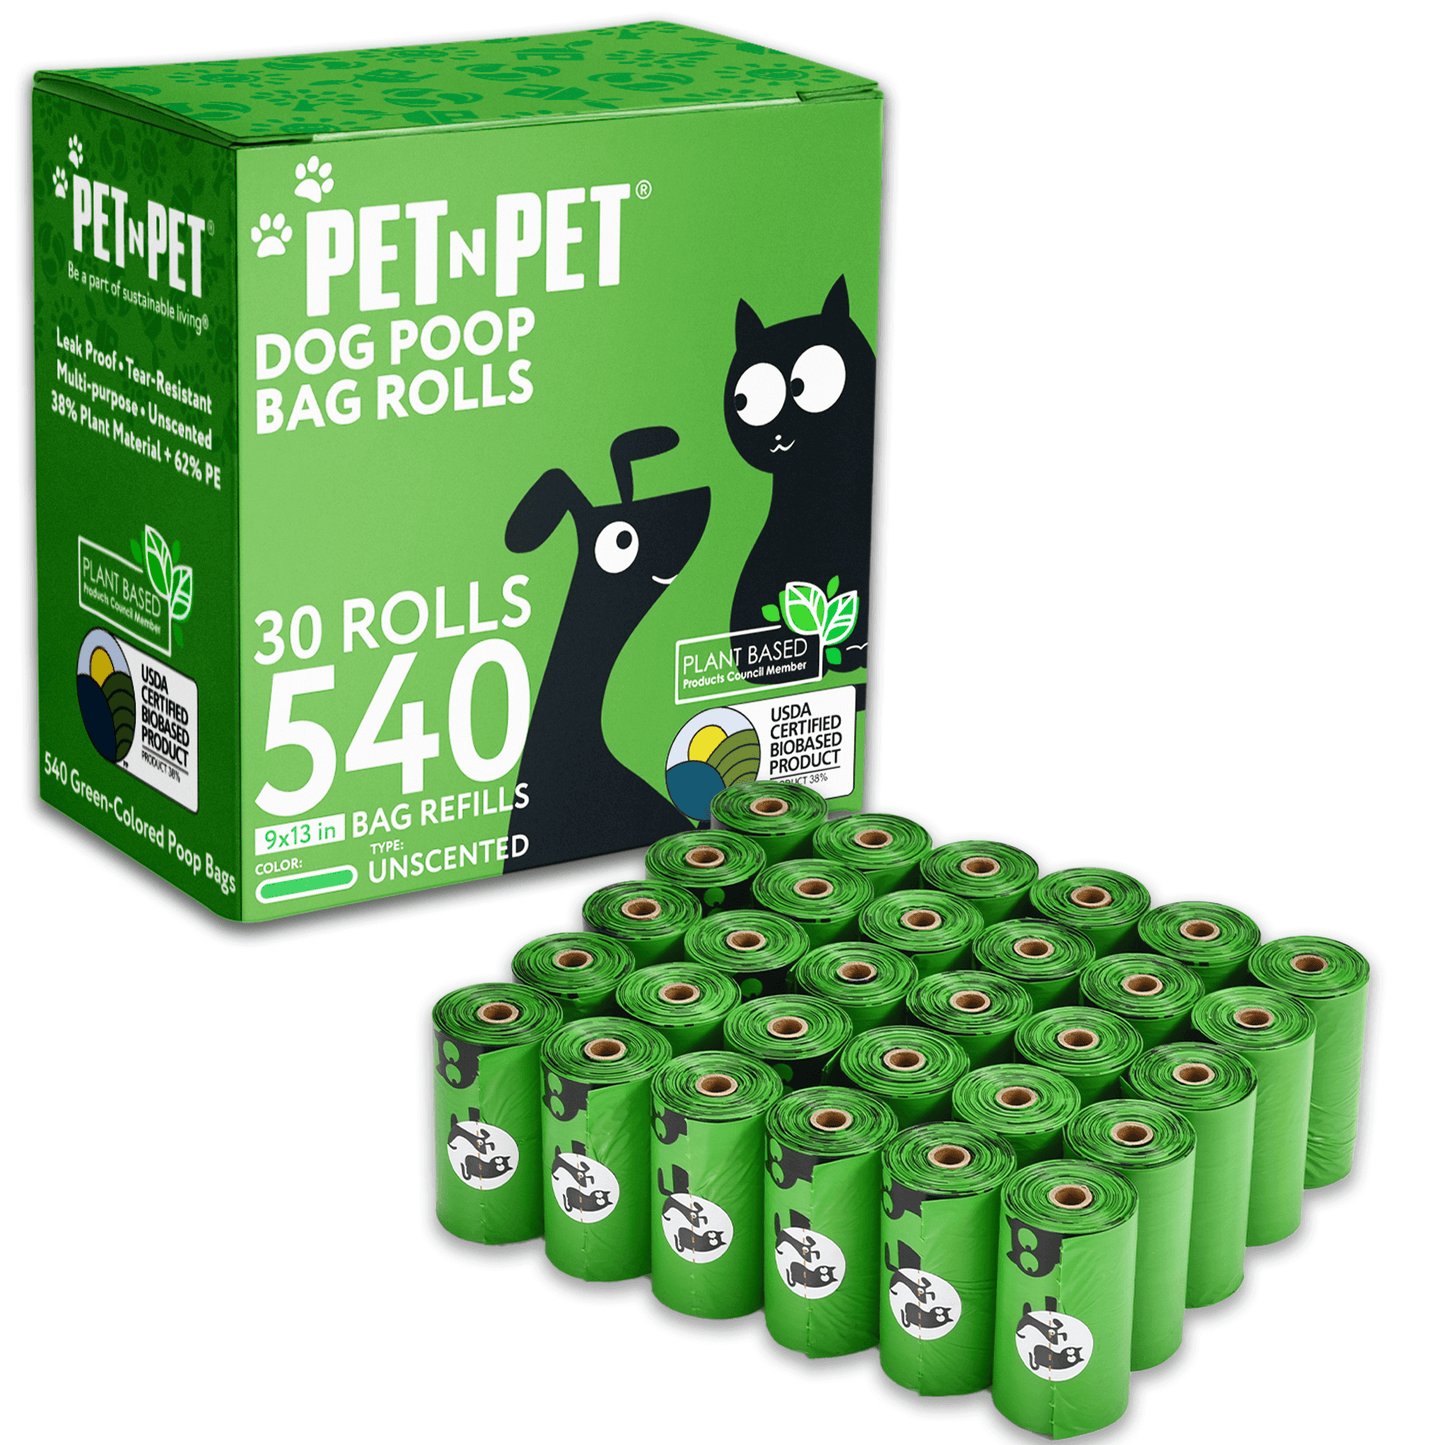 Pet N Pet 540 Dog Poop Bags